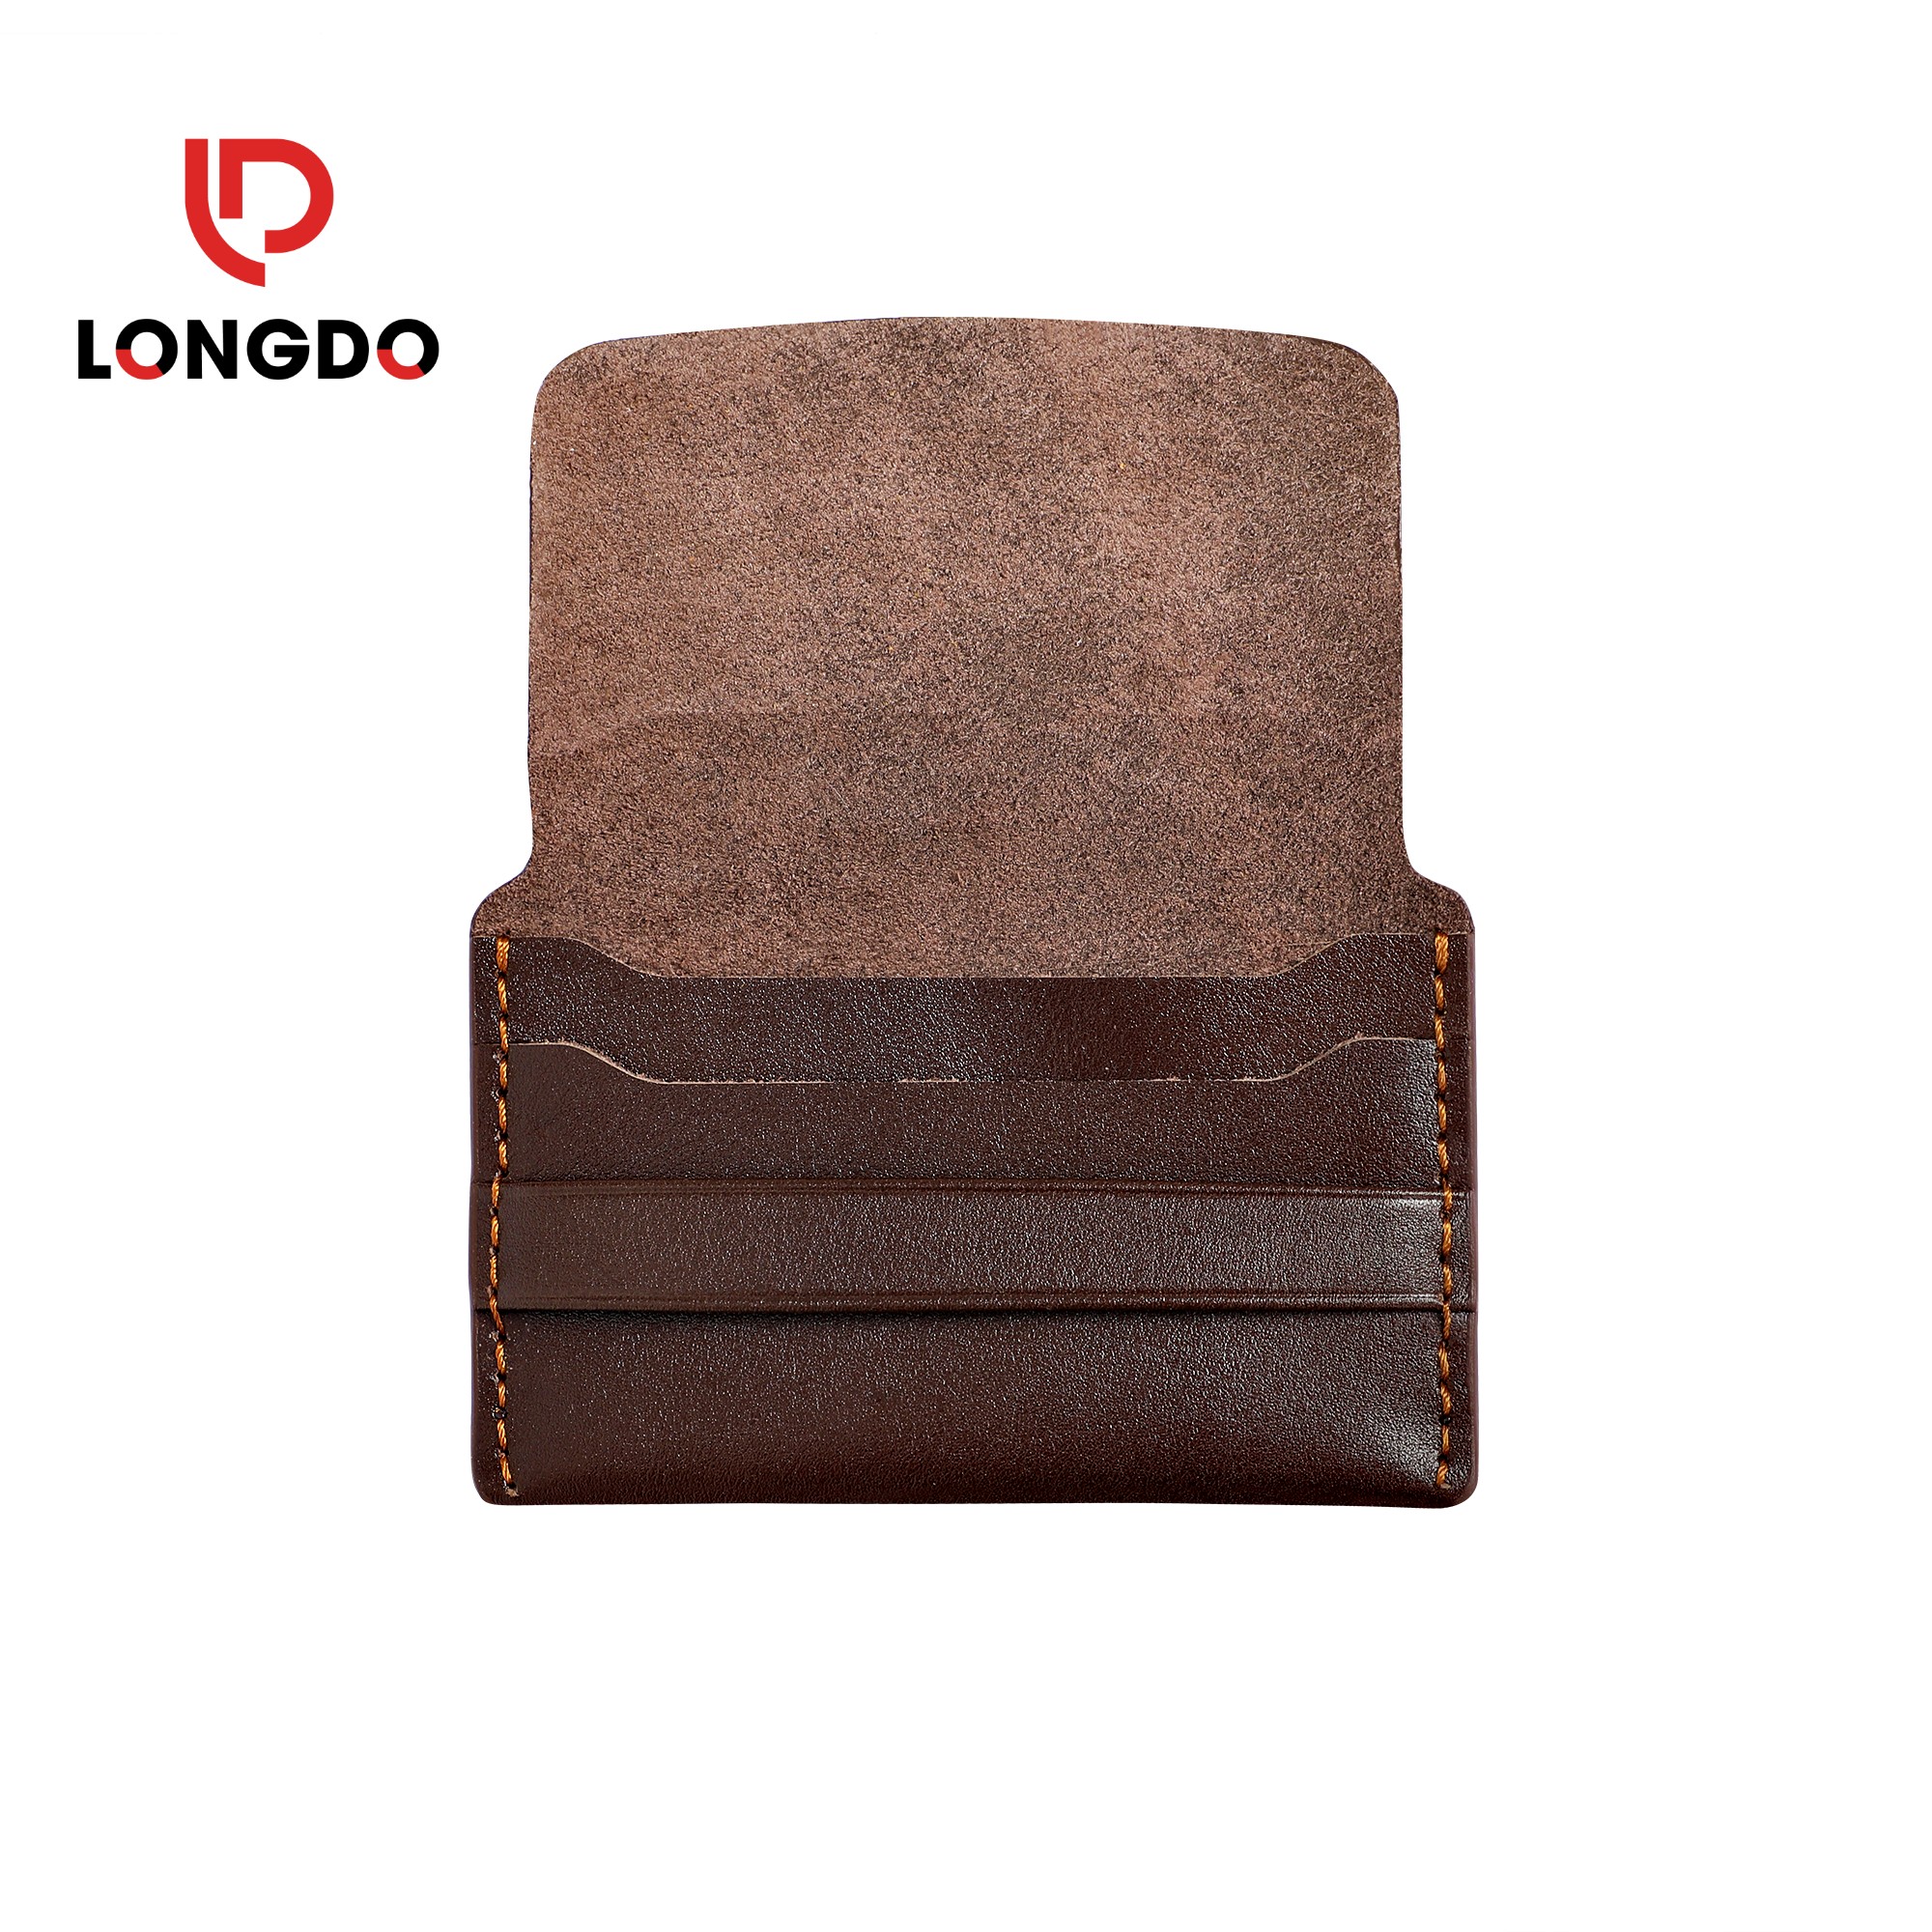 Ví đựng thẻ handmade - Cam kết 100% da bò thật nhập khẩu - Bảo hành 5 năm - Thương hiệu uy tín Longdo Leather - C01